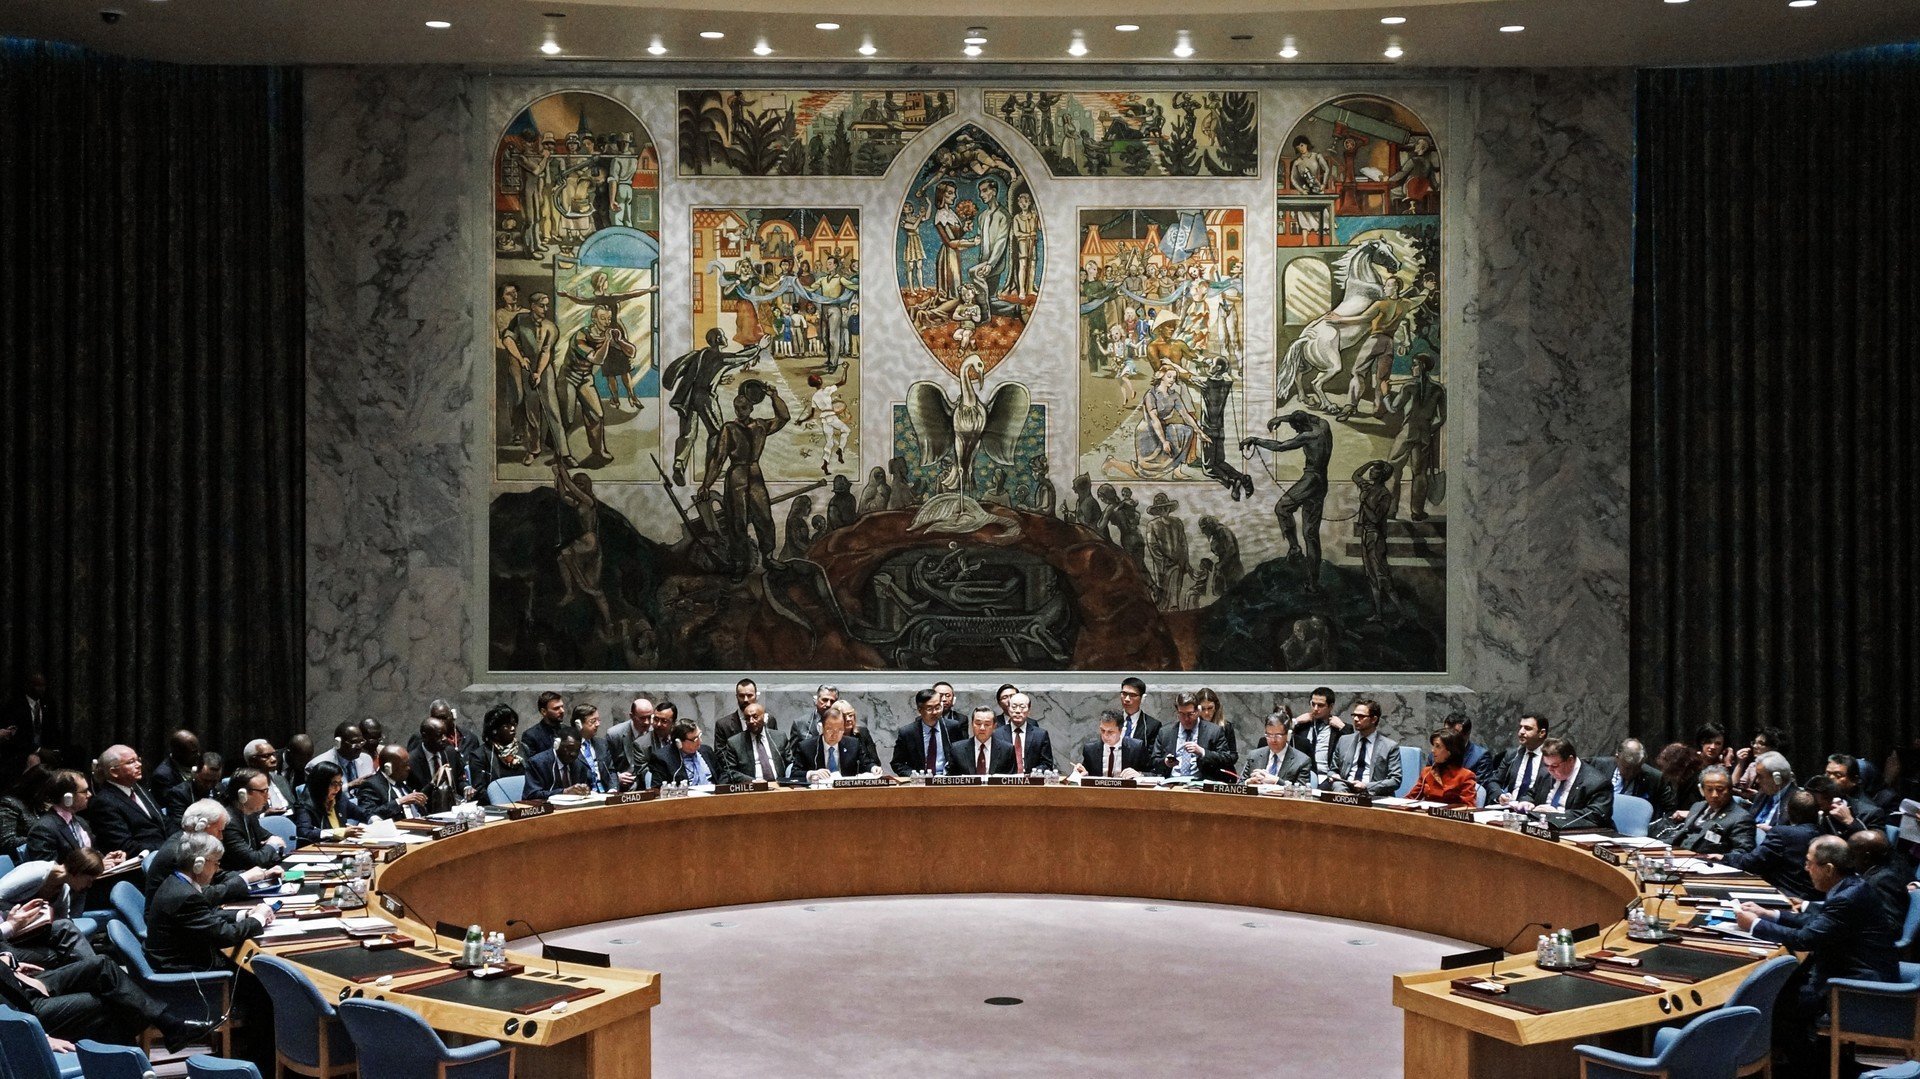 Эзотерическая картина Пер Крога в зале заседаний Совета Безопасности ООН